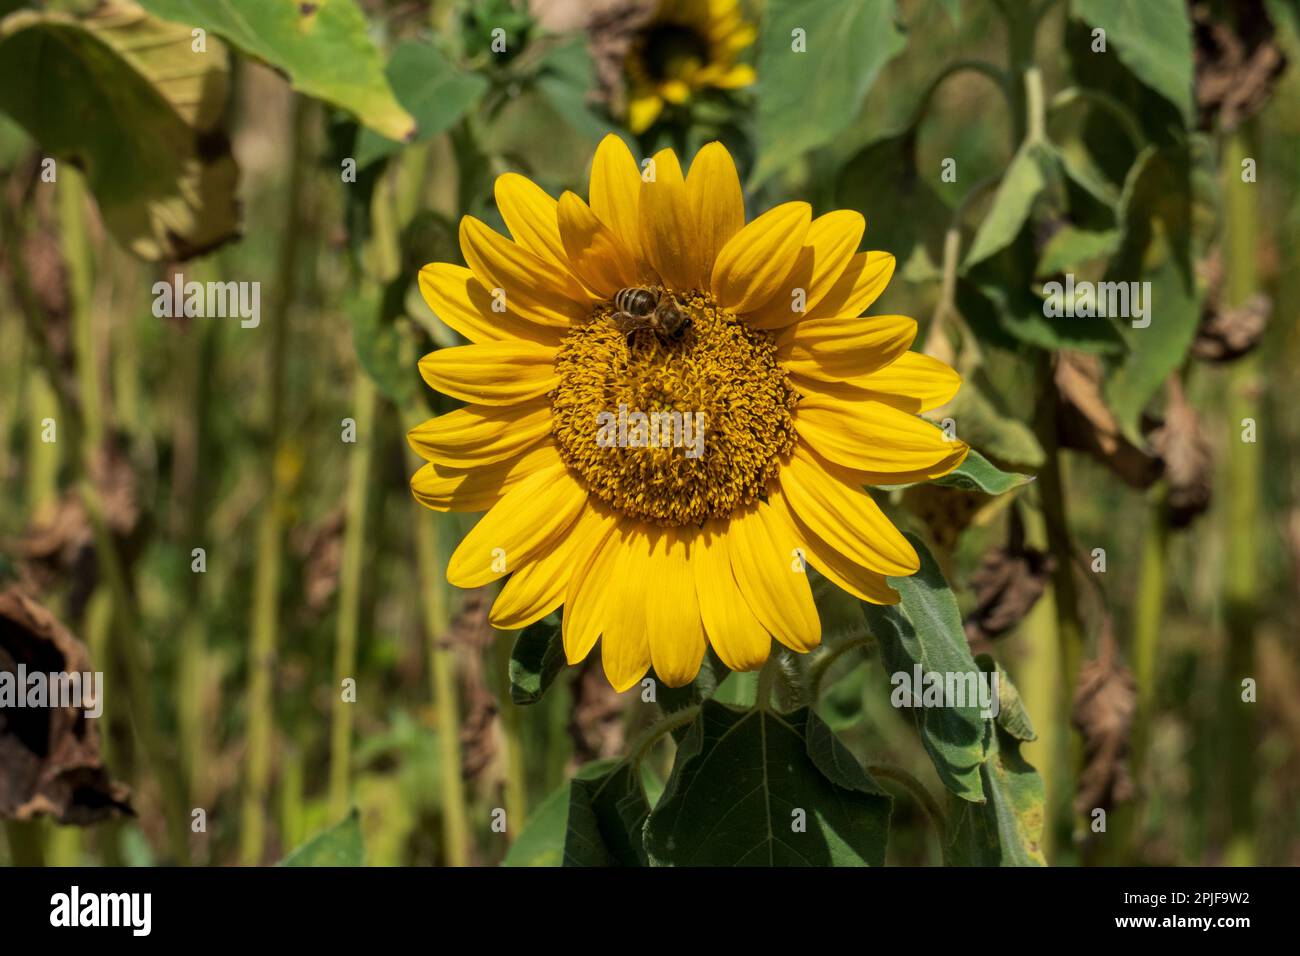 Biene auf einer Sonnenblume Blüte im August Stock Photo